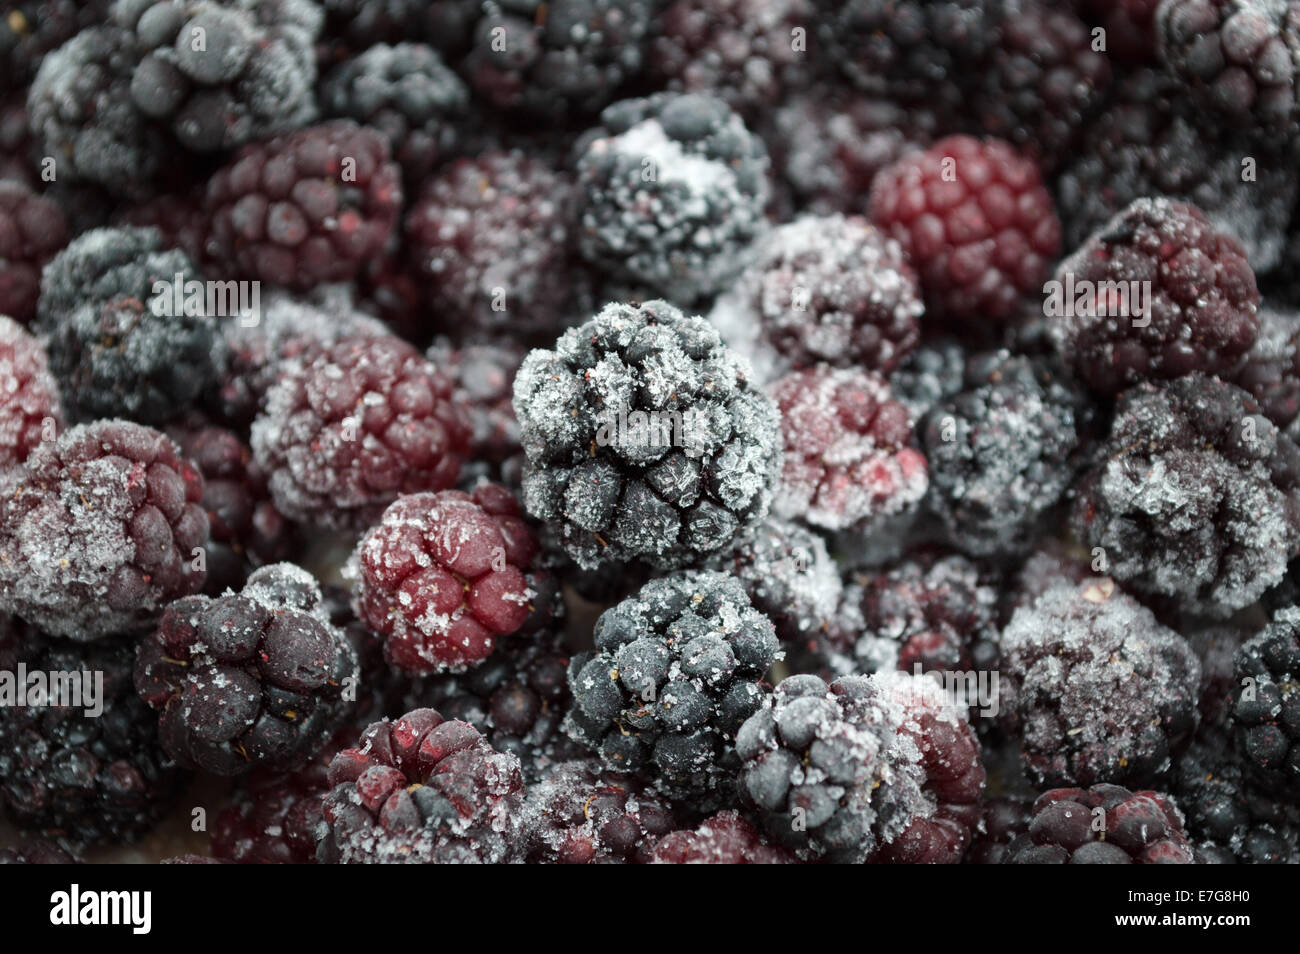 frozen blackberries Stock Photo